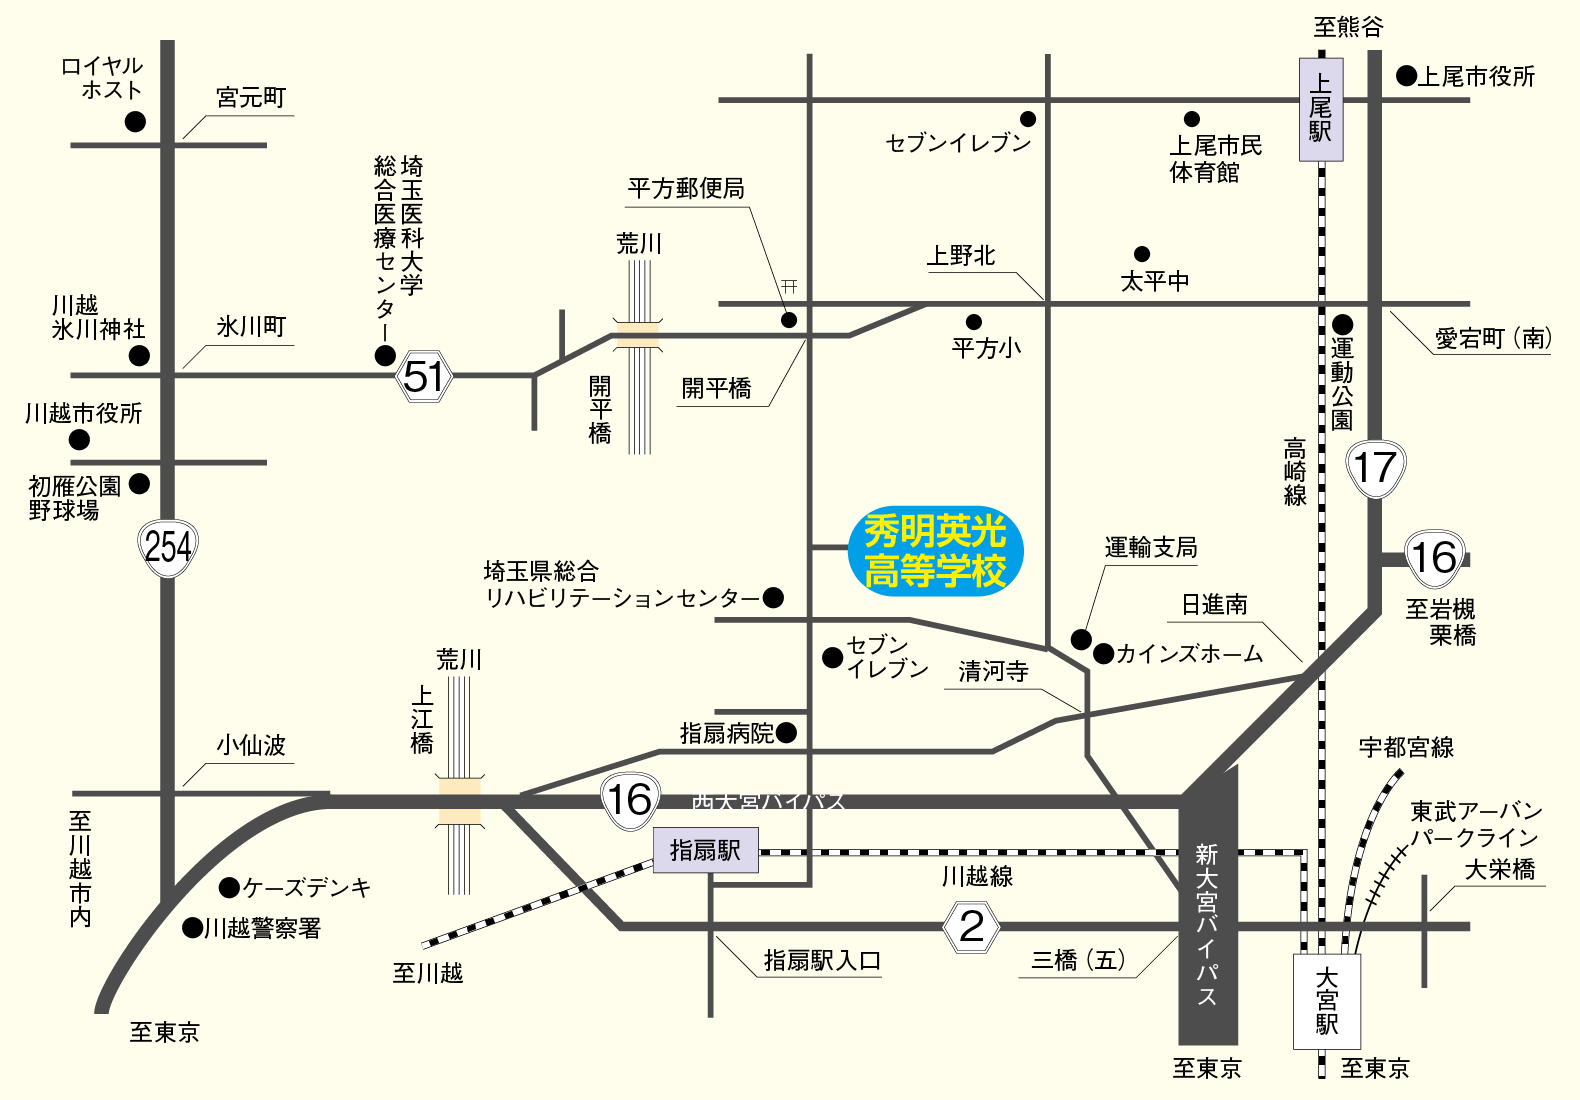 秀明英光高等学校の場所および周辺交通を表す概略図です。